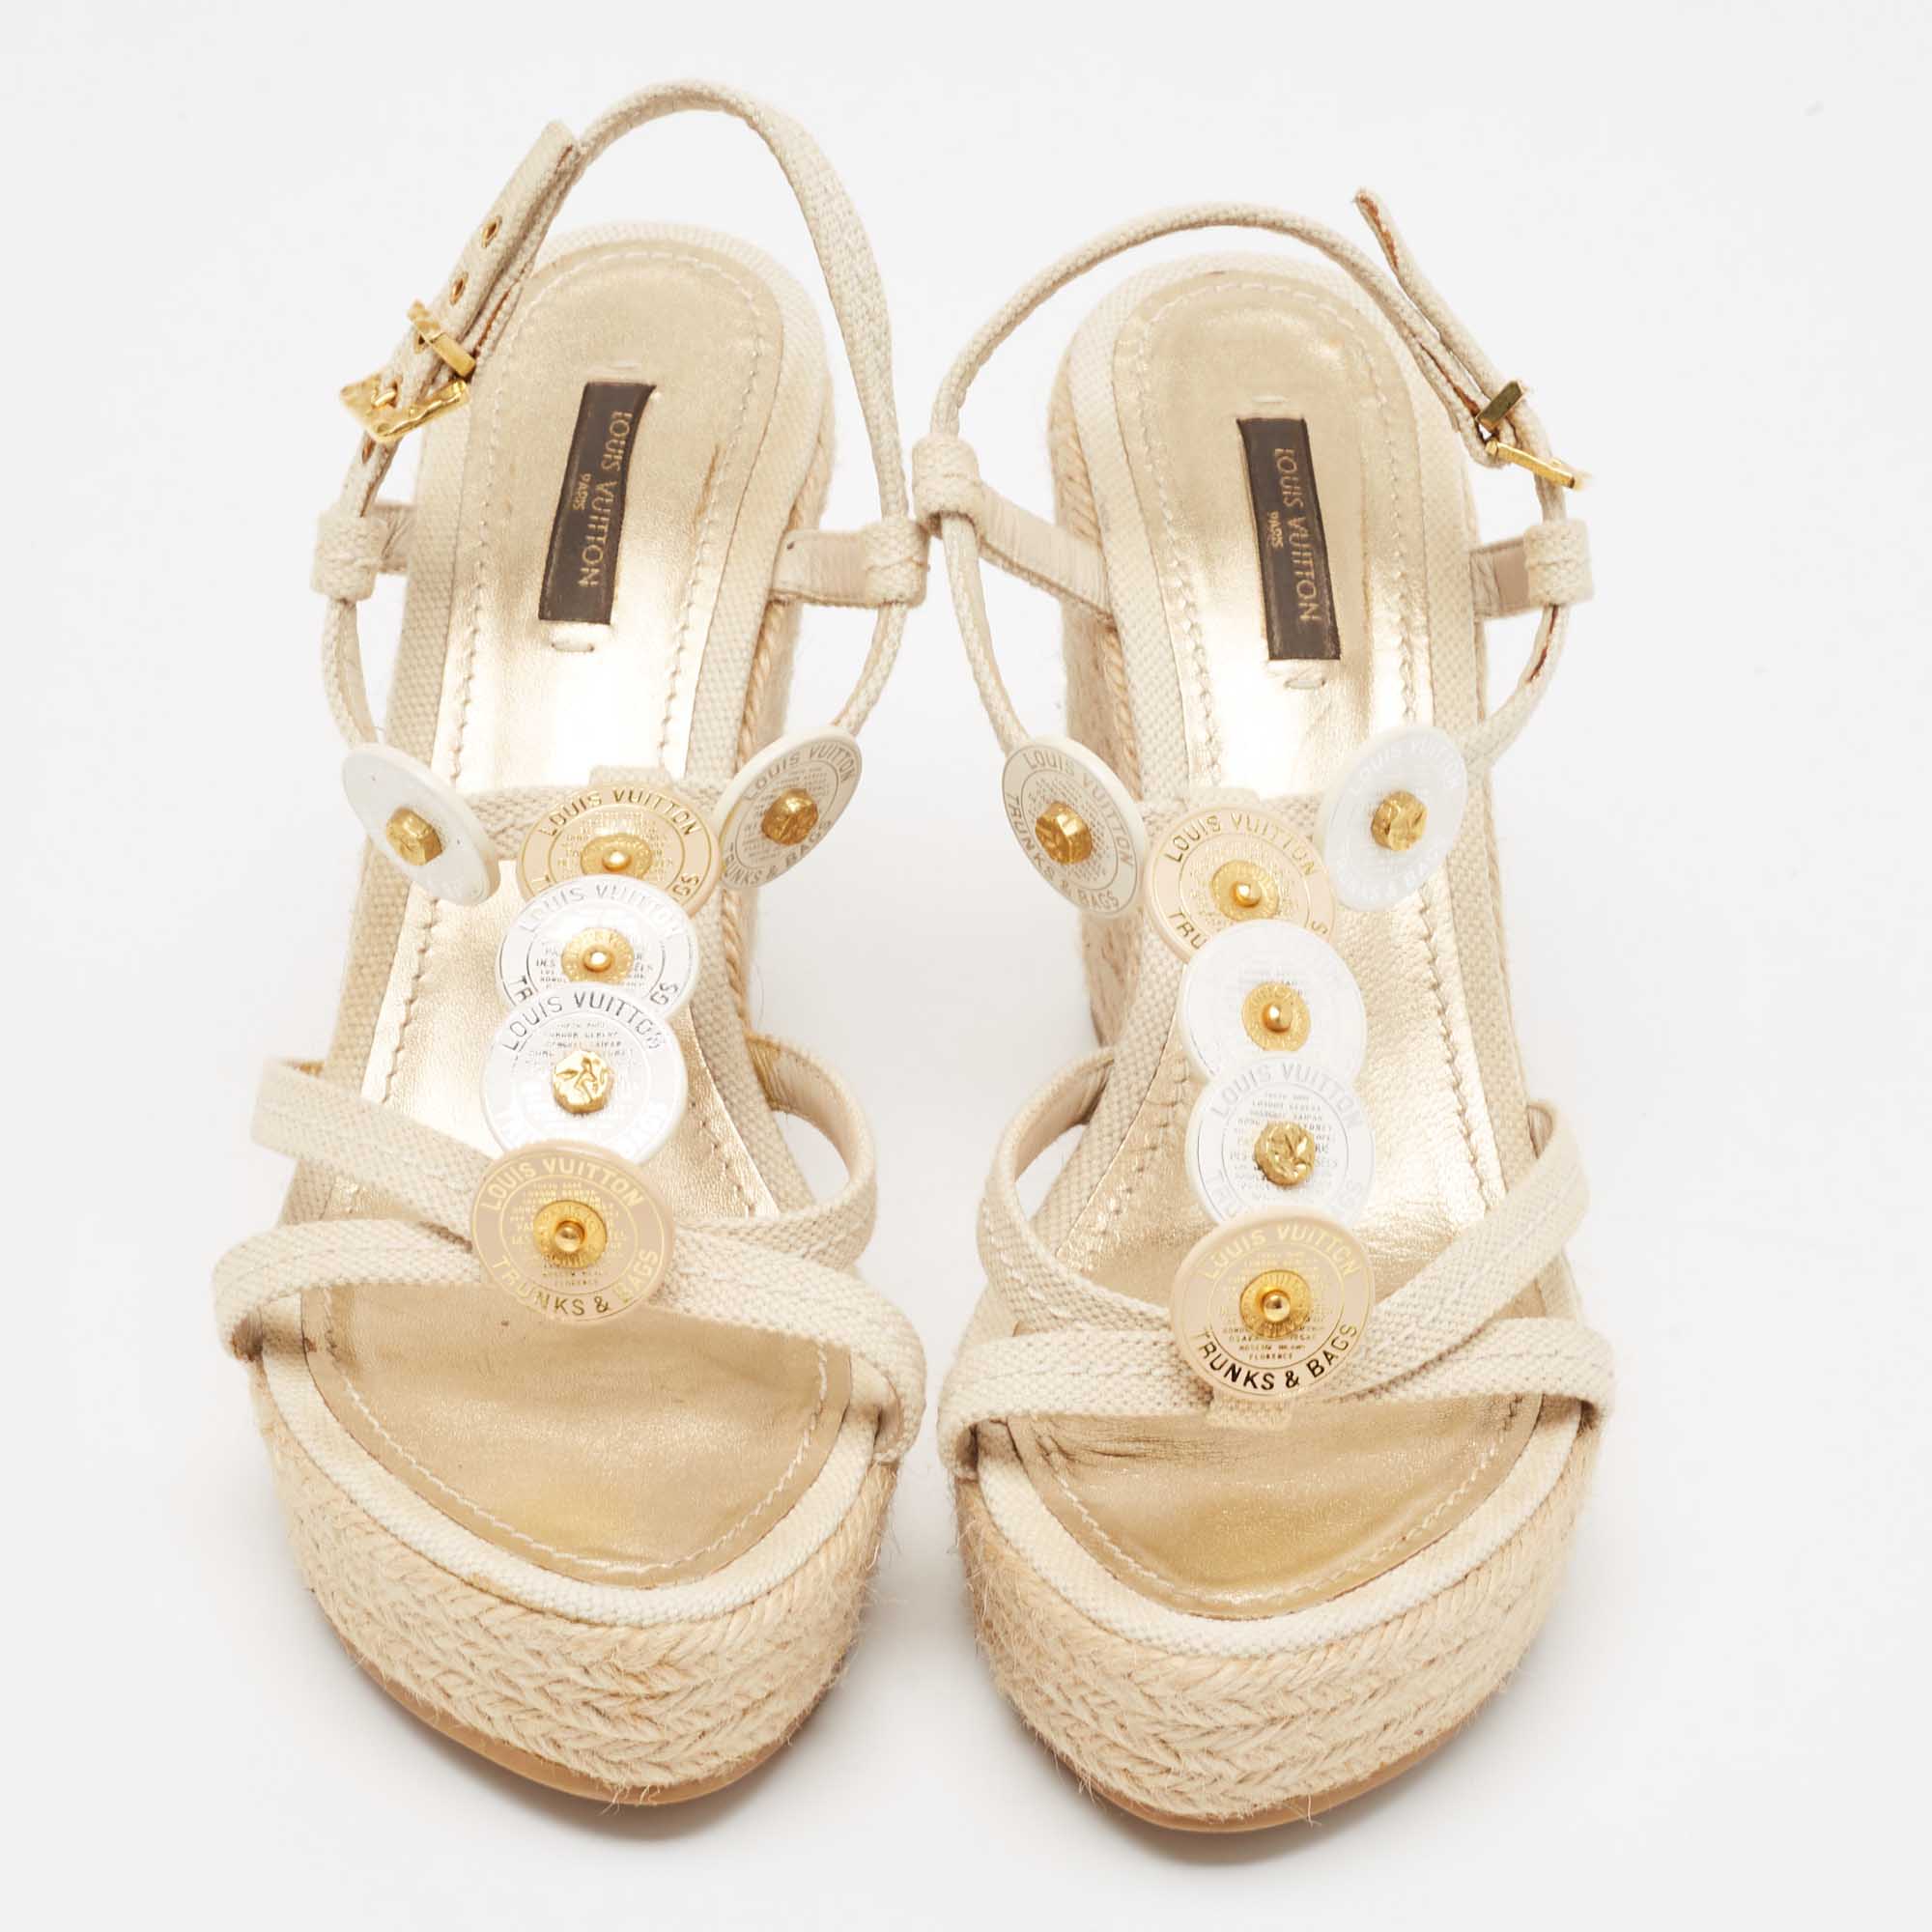 Louis Vuitton Cream Canvas Wedge Espadrilles Sandals Size 37